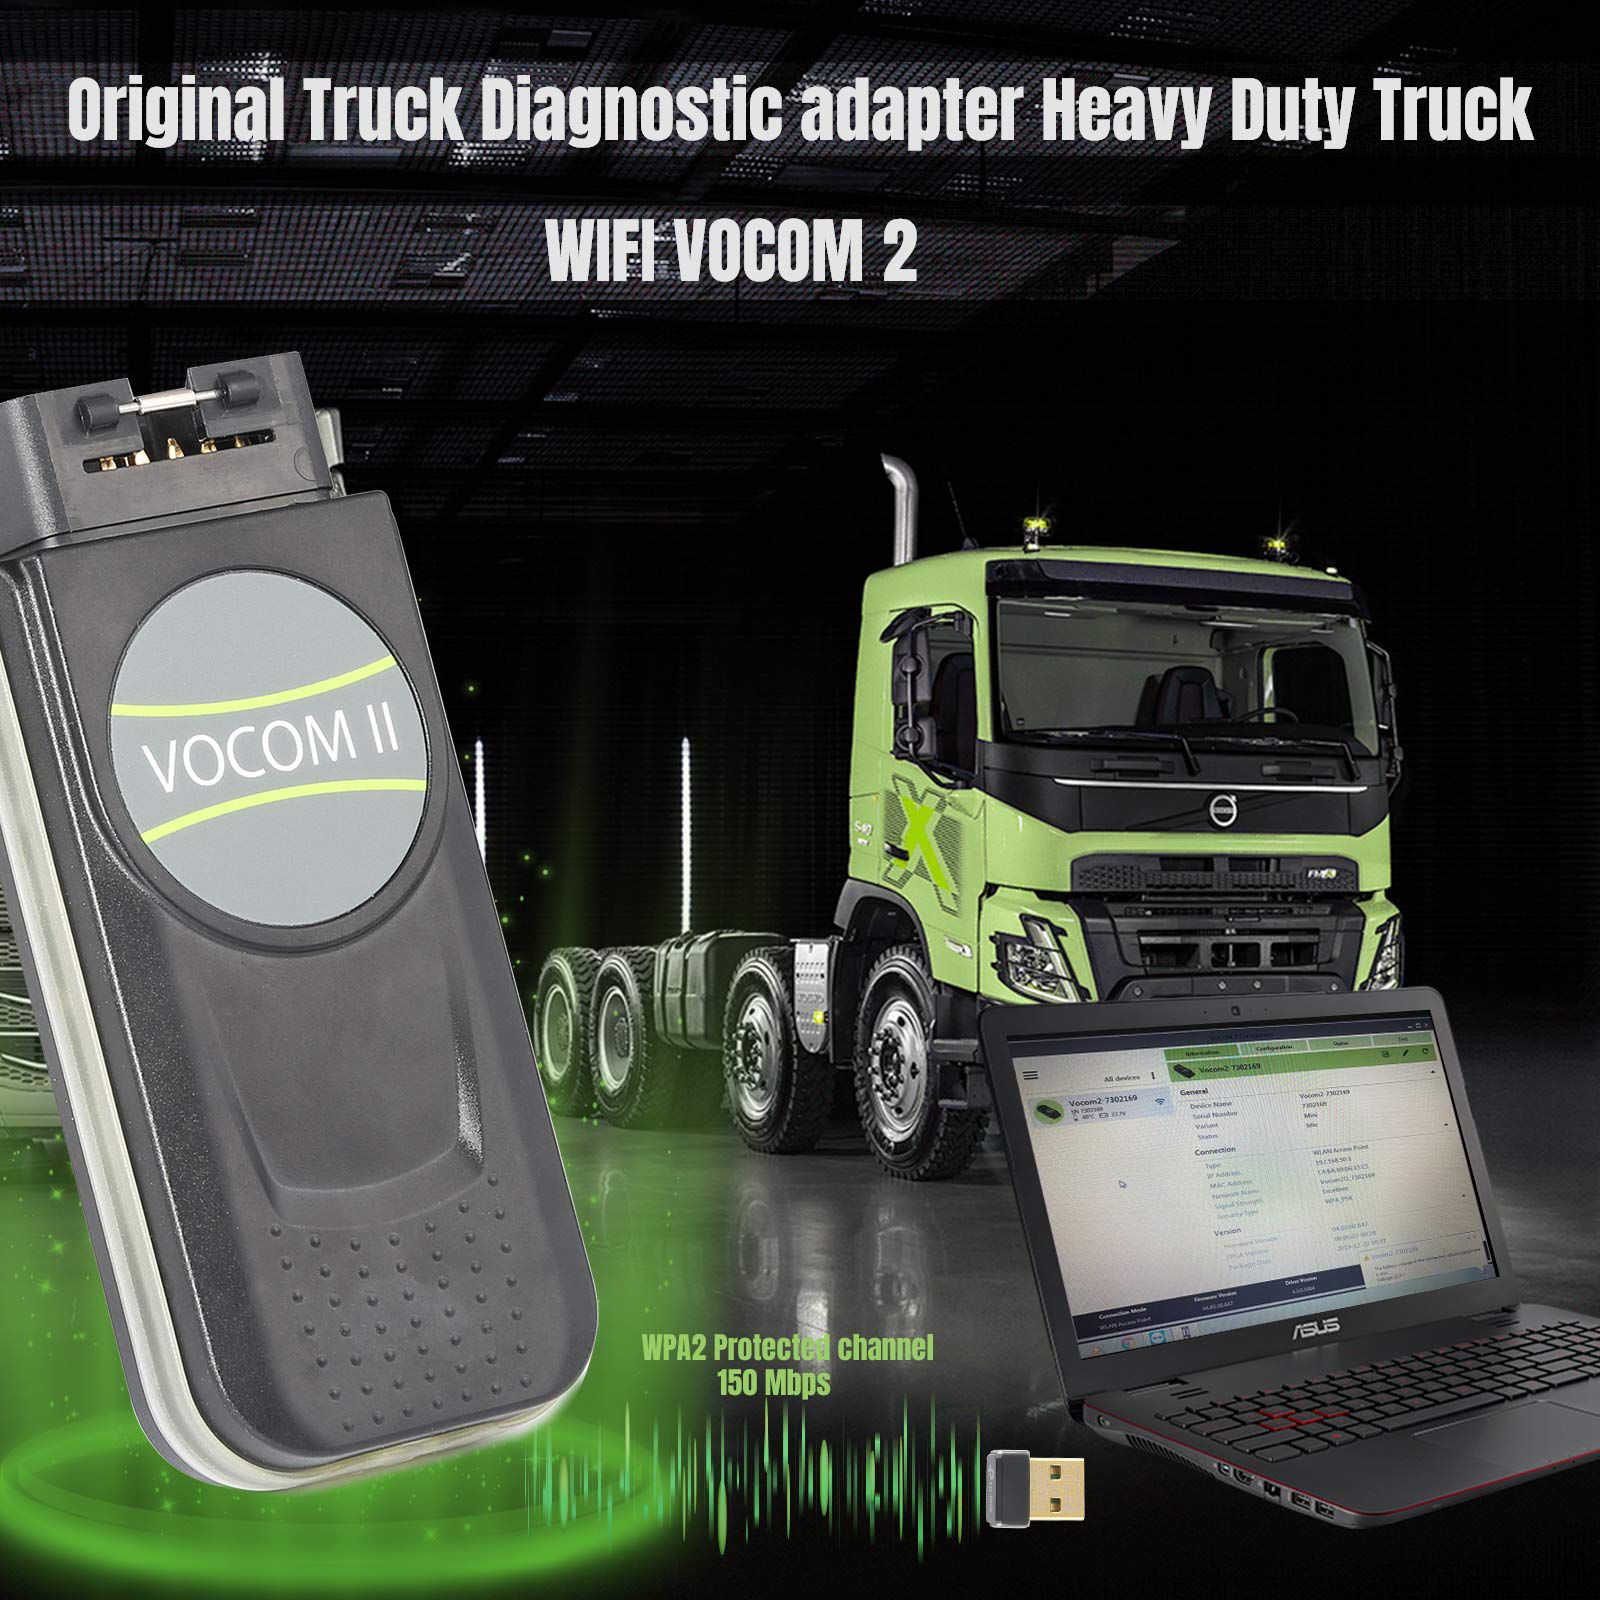 El original mini Volvo vocom II Adapter 88894200 truck Diagnosis Tool admite el trabajo WiFi del camión Volvo / Renault / ud / Mack